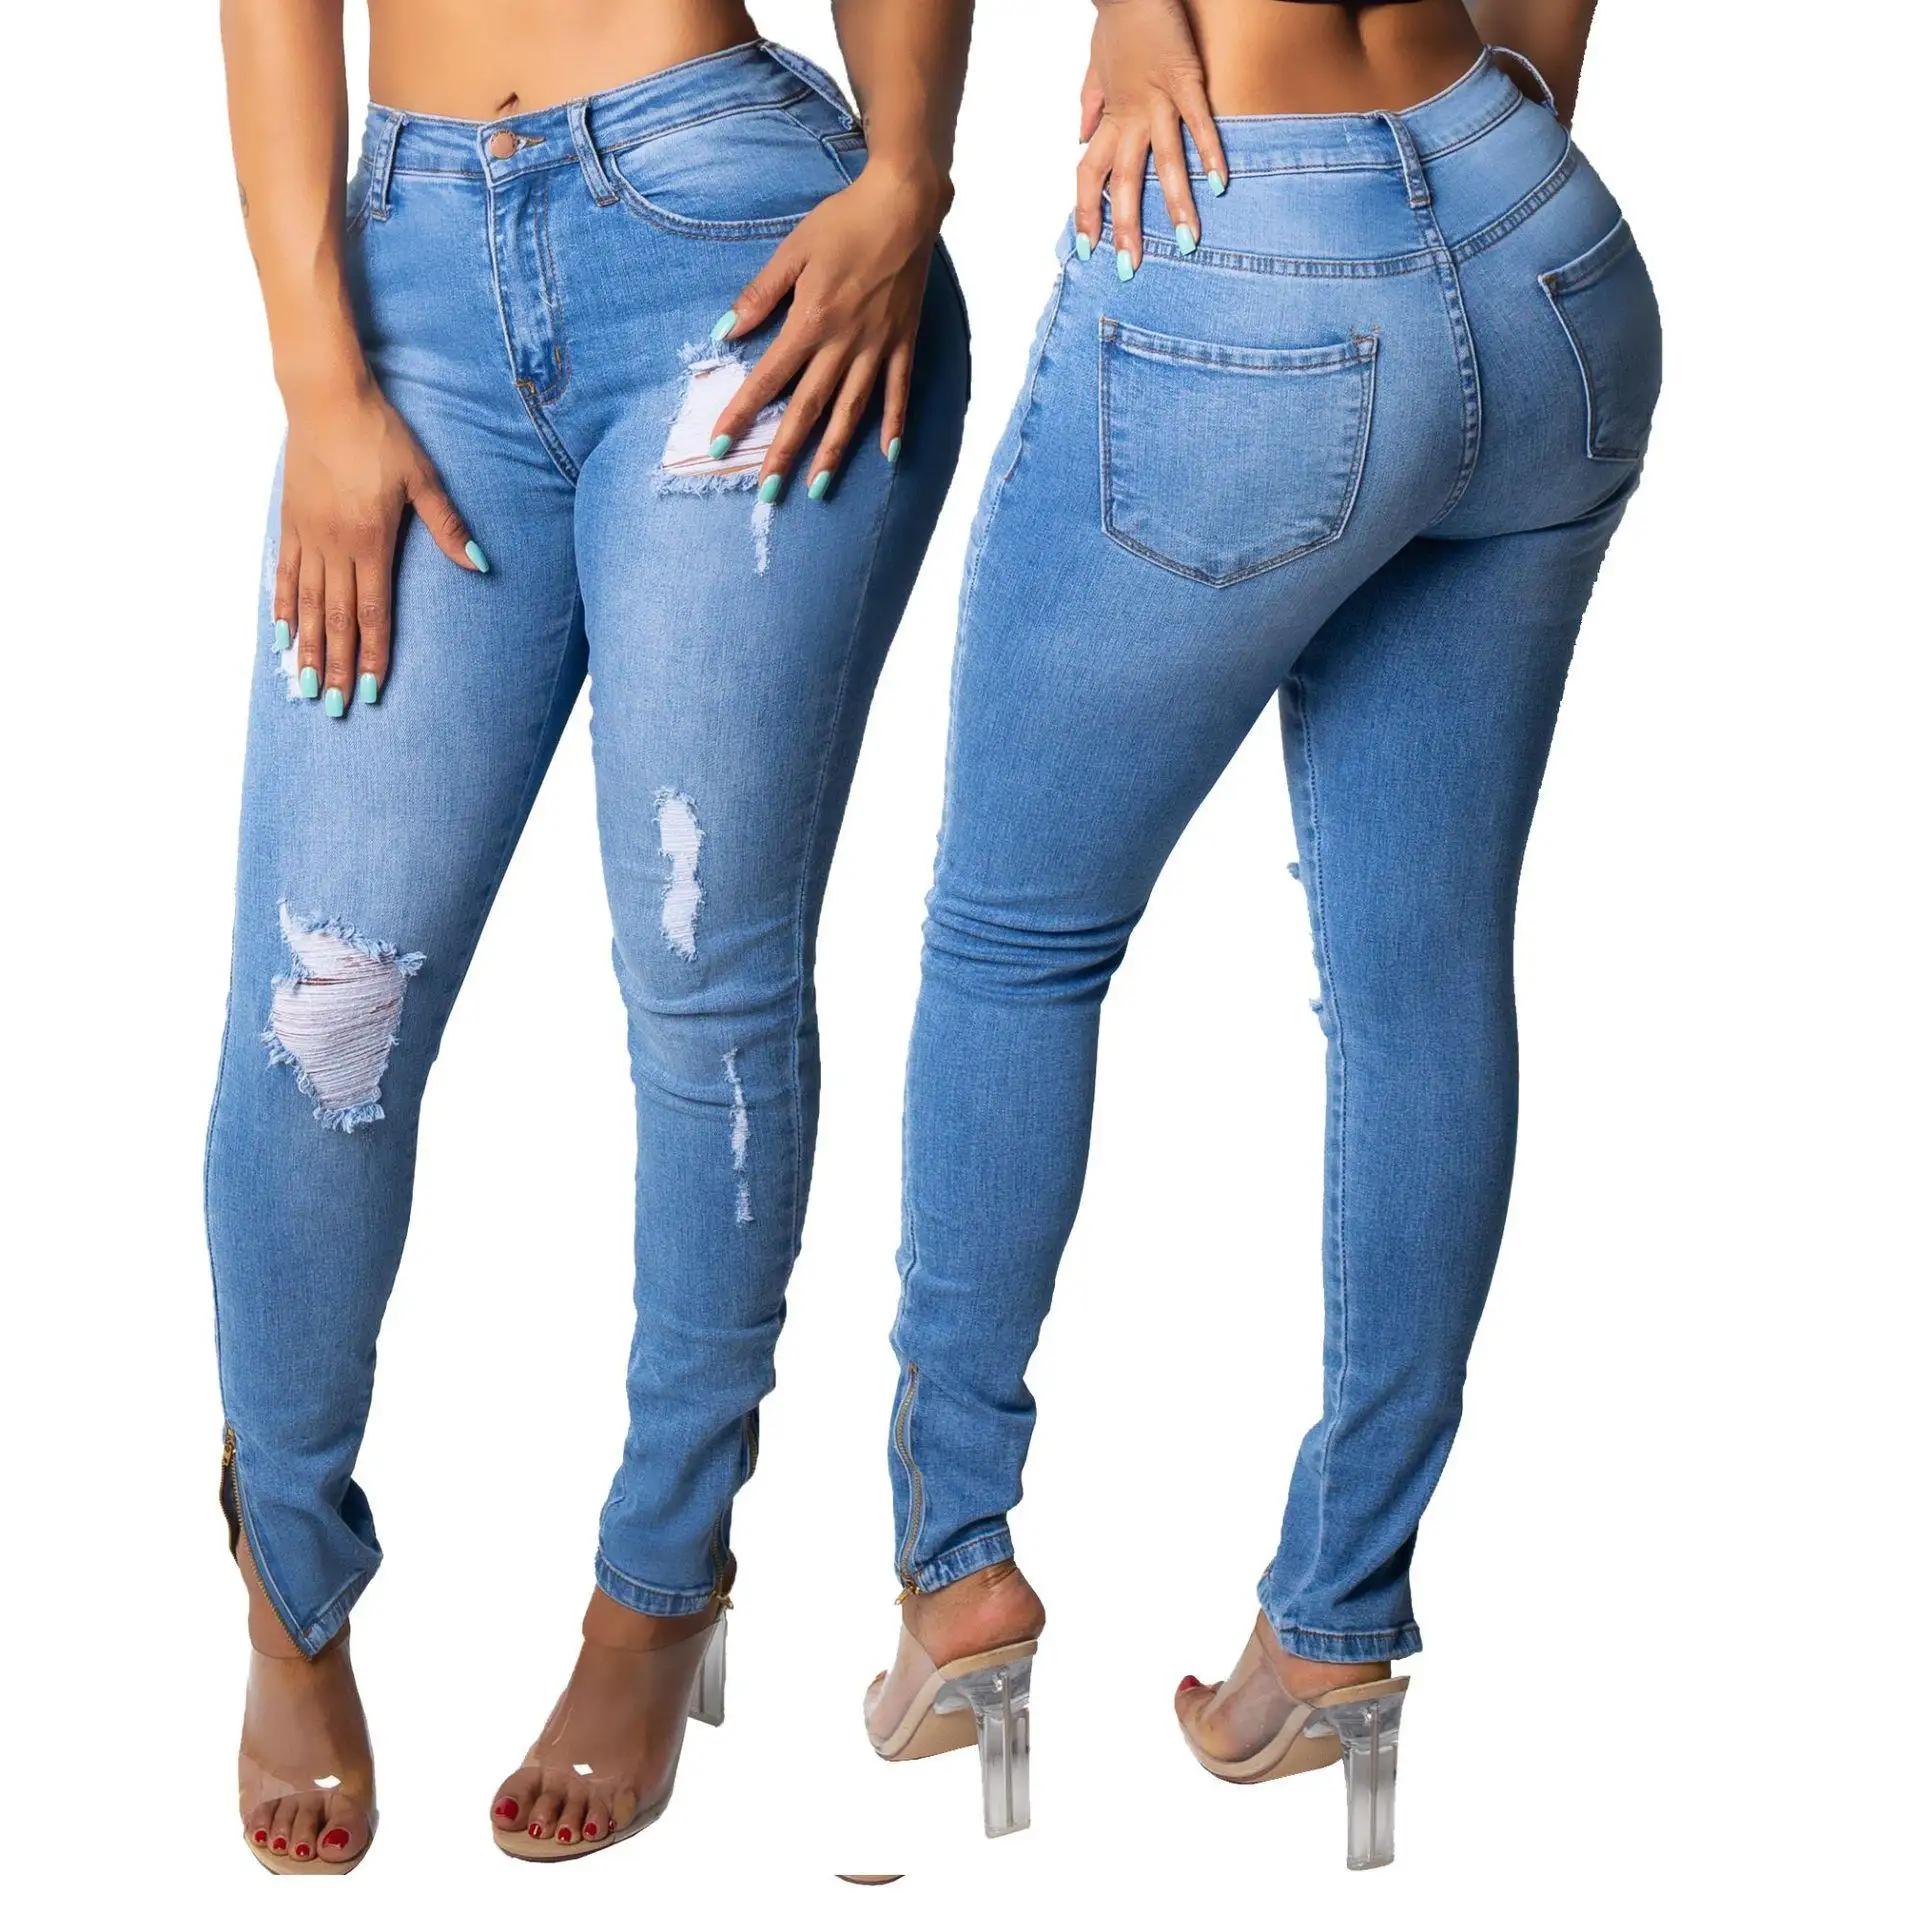 Женские трикотажные джинсовые брюки в наличии/отгрузка отмена товаров по дешевой цене